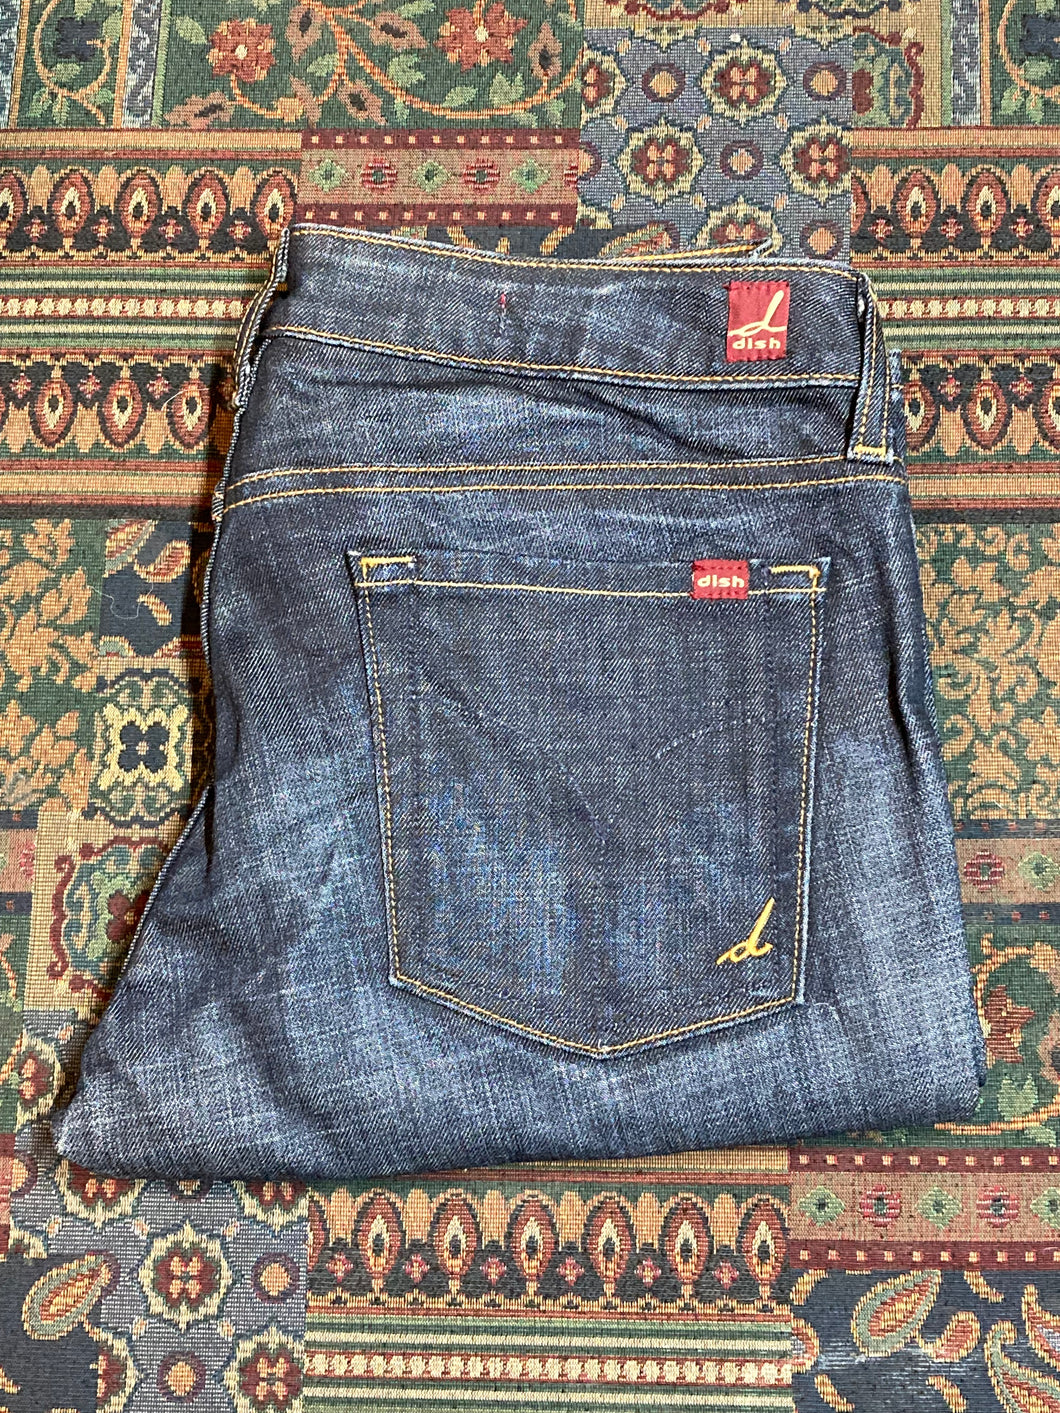 Dish Dark Wash Denim Jeans - 30”x32”, Made in Canada - Kingspier Vintage